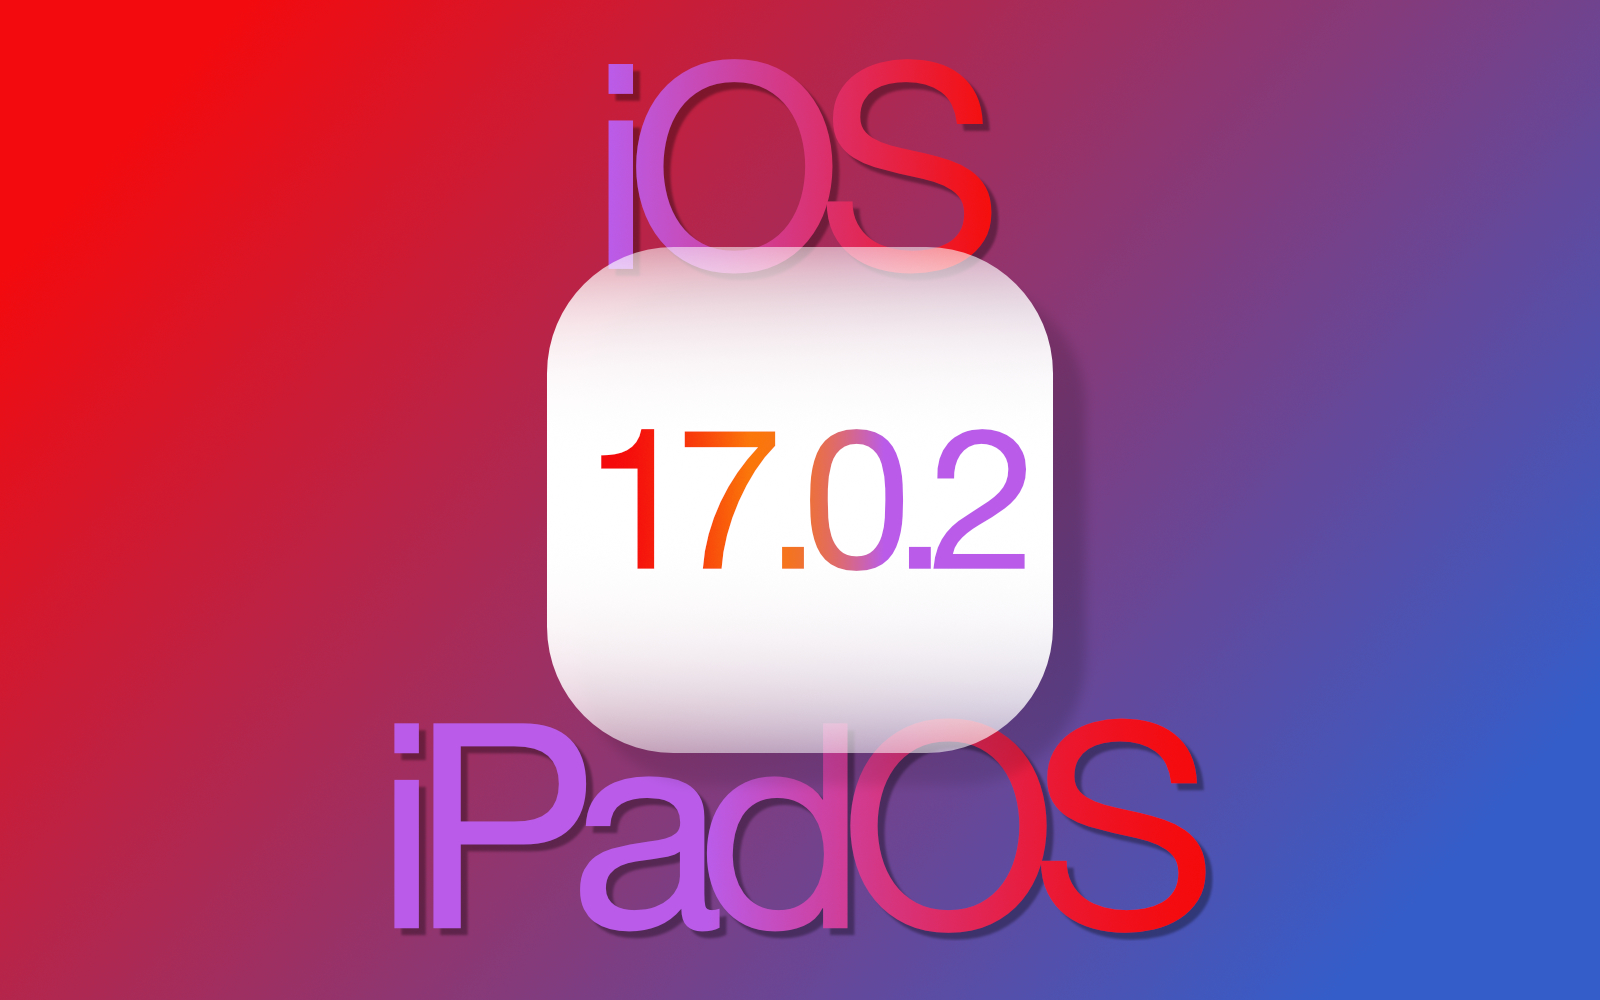 IOS17 0 2 update